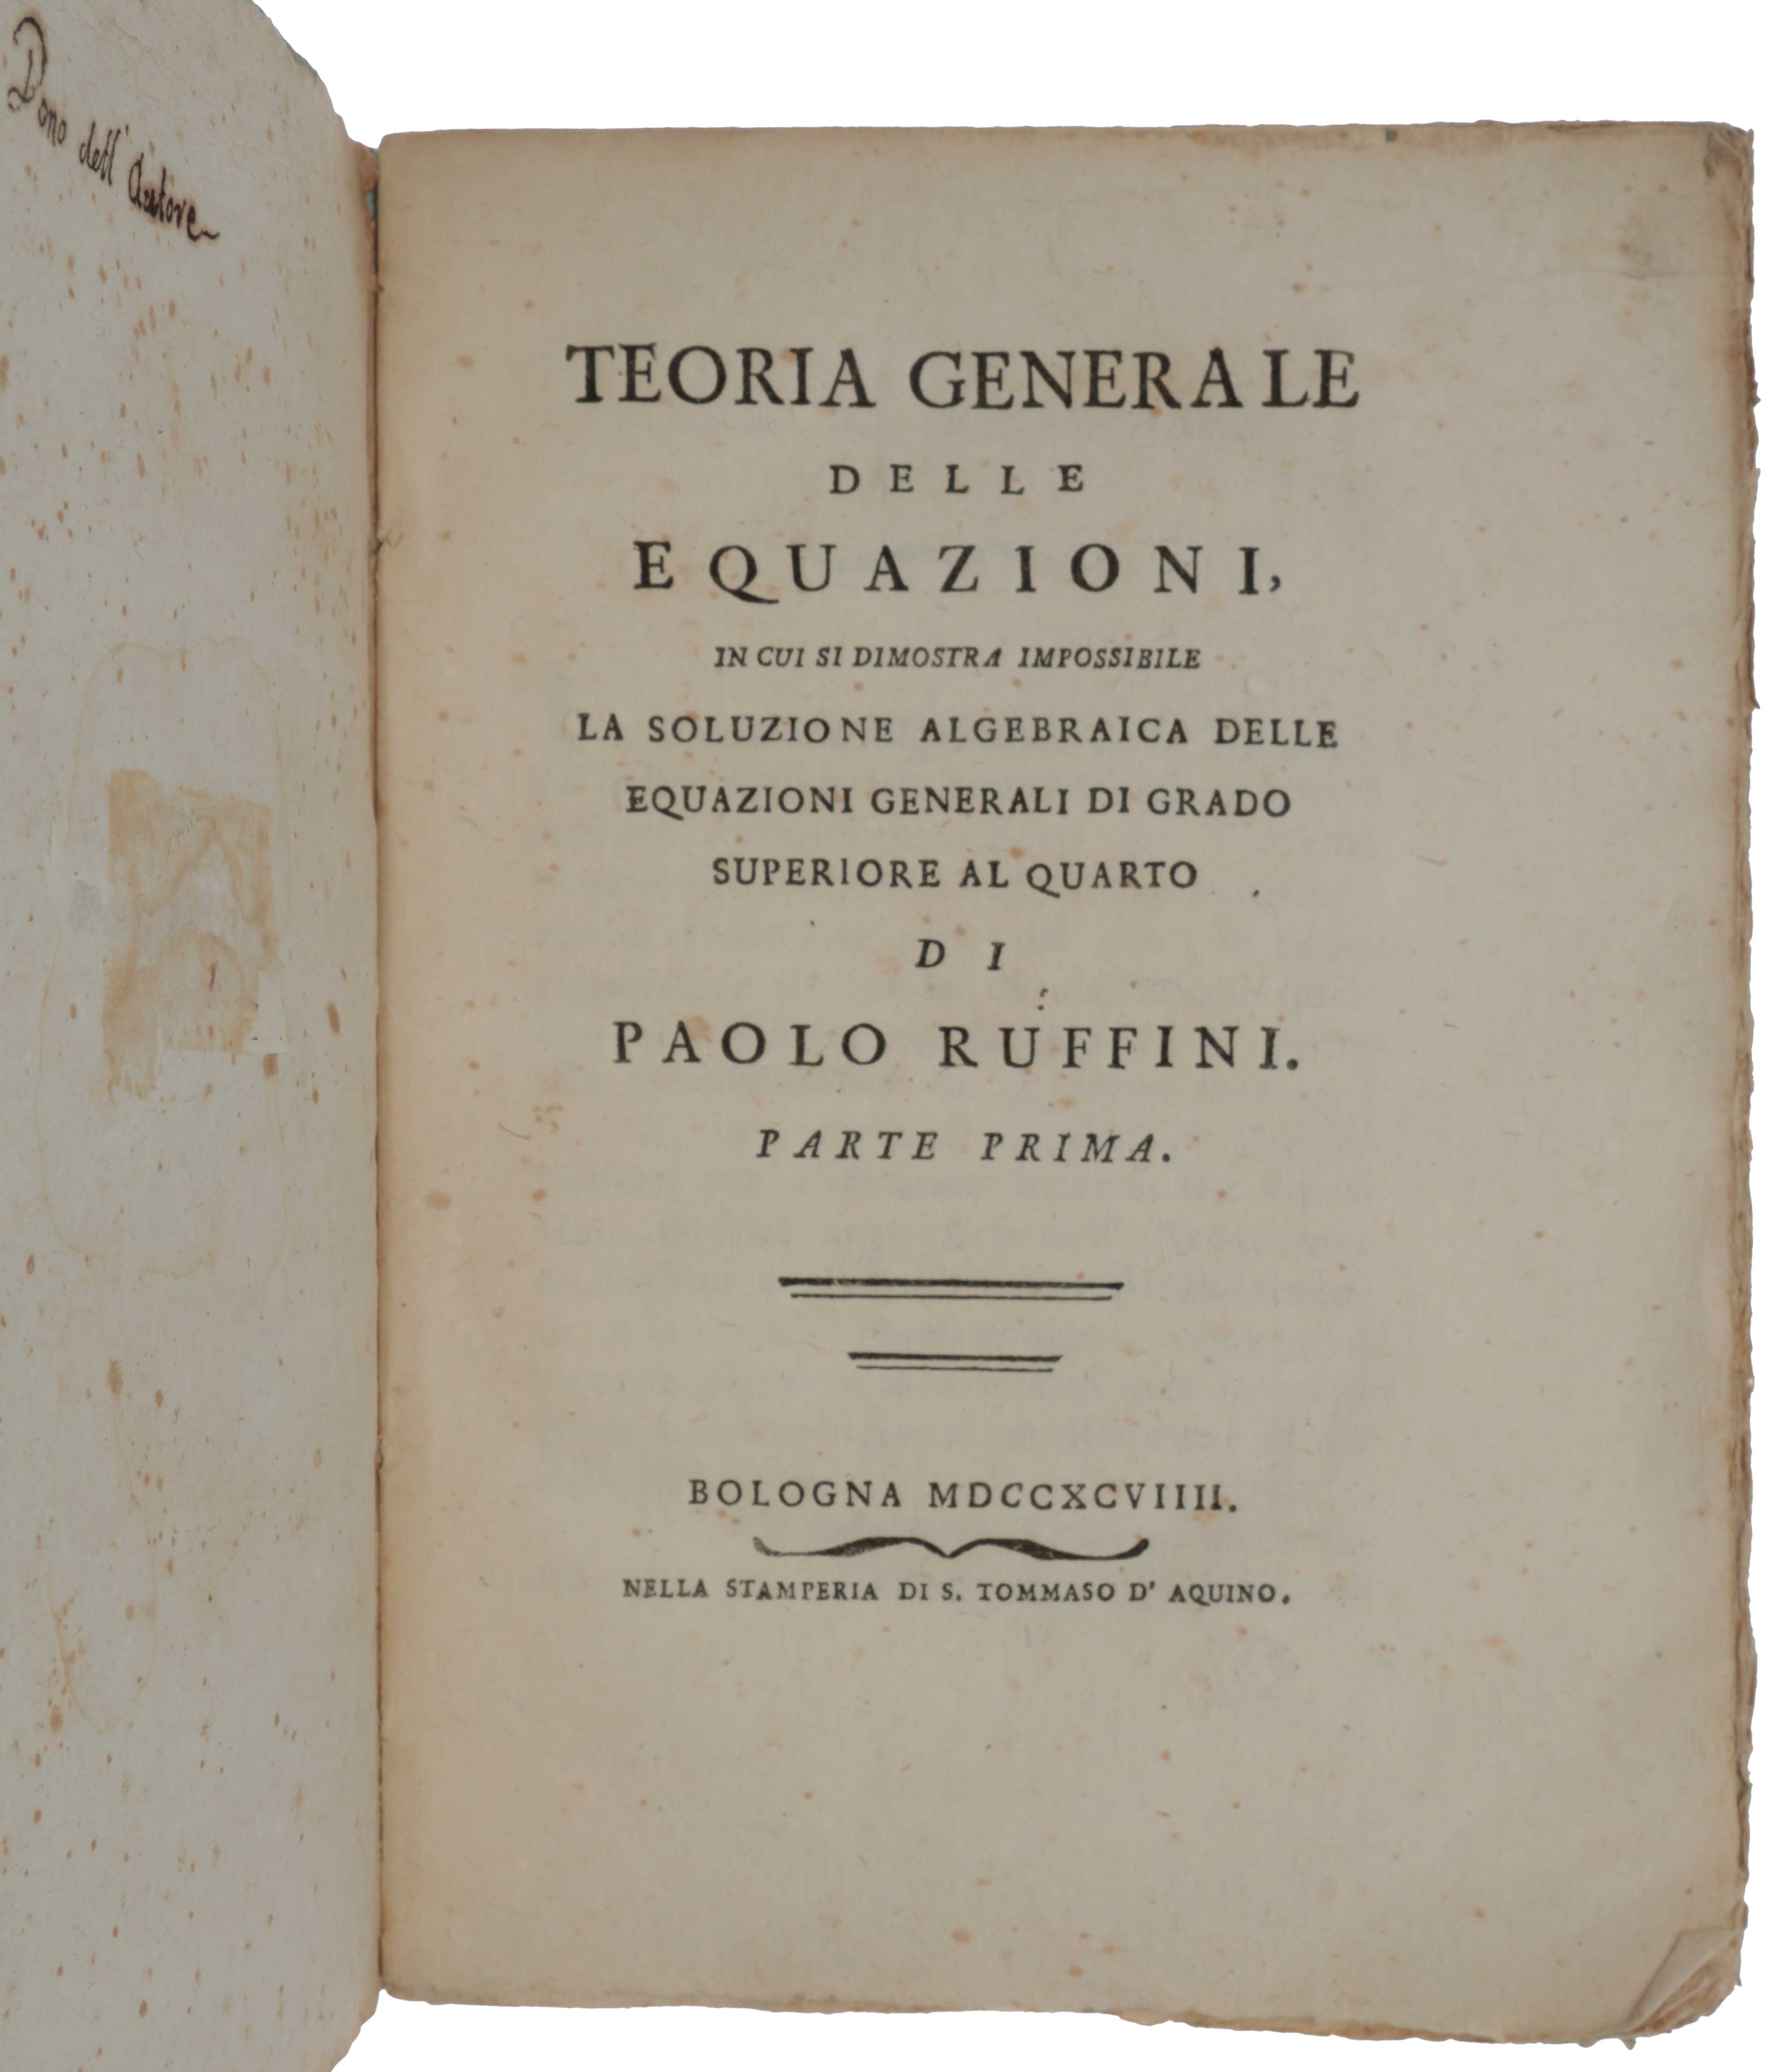 Item #4780 Teoria Generale delle Equazioni, in cui si dimostra impossibile la soluzione algebraica dell equazioni generali di grado superiore al quarto. Paolo RUFFINI.